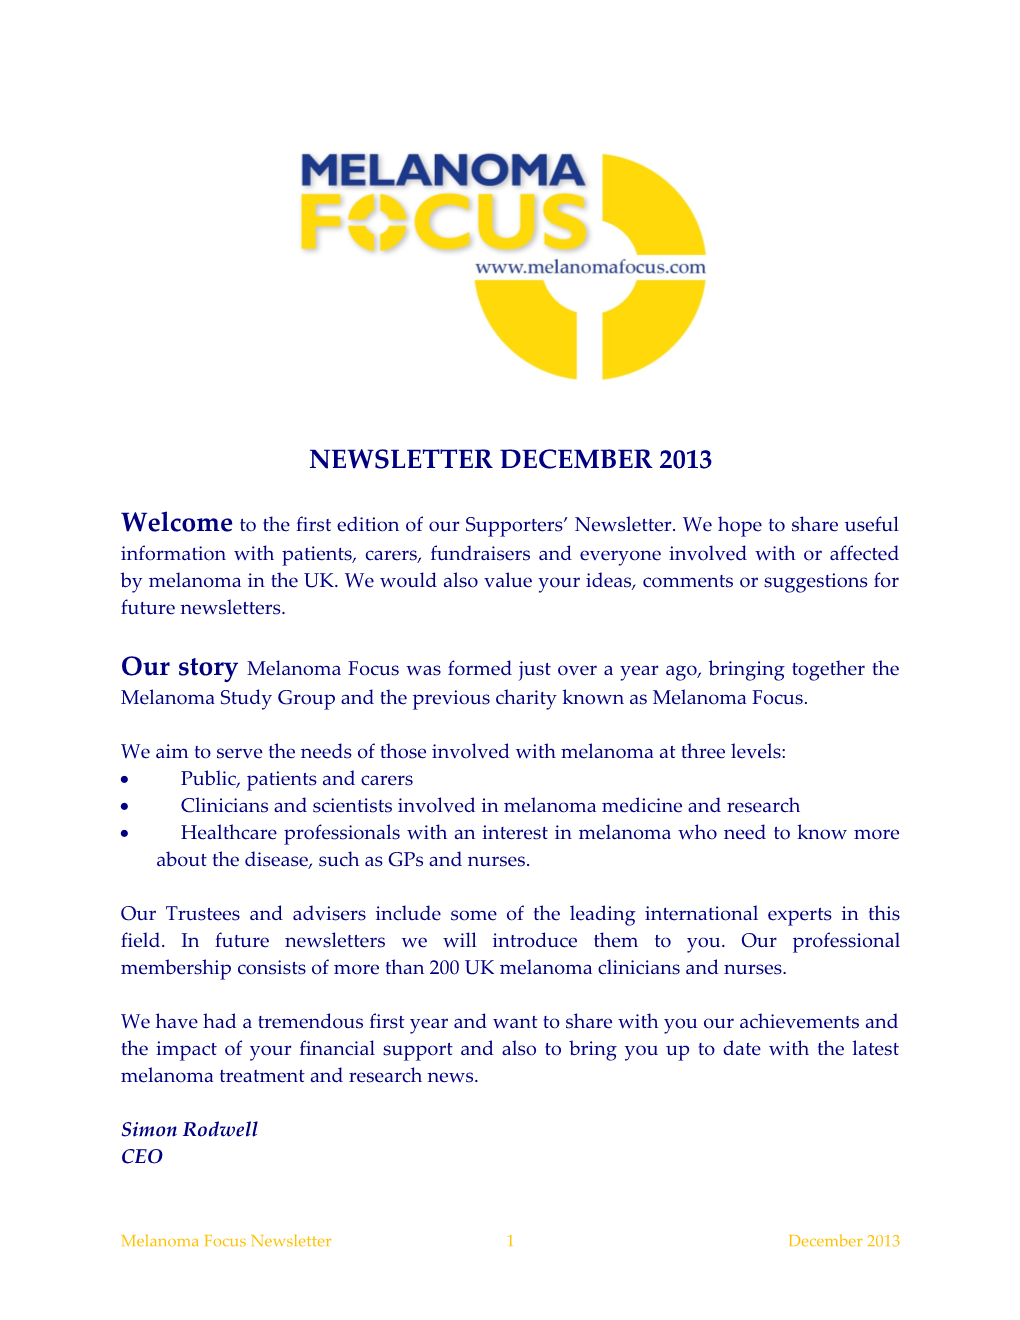 Melanoma Focus Supporters Newsletter December 2013